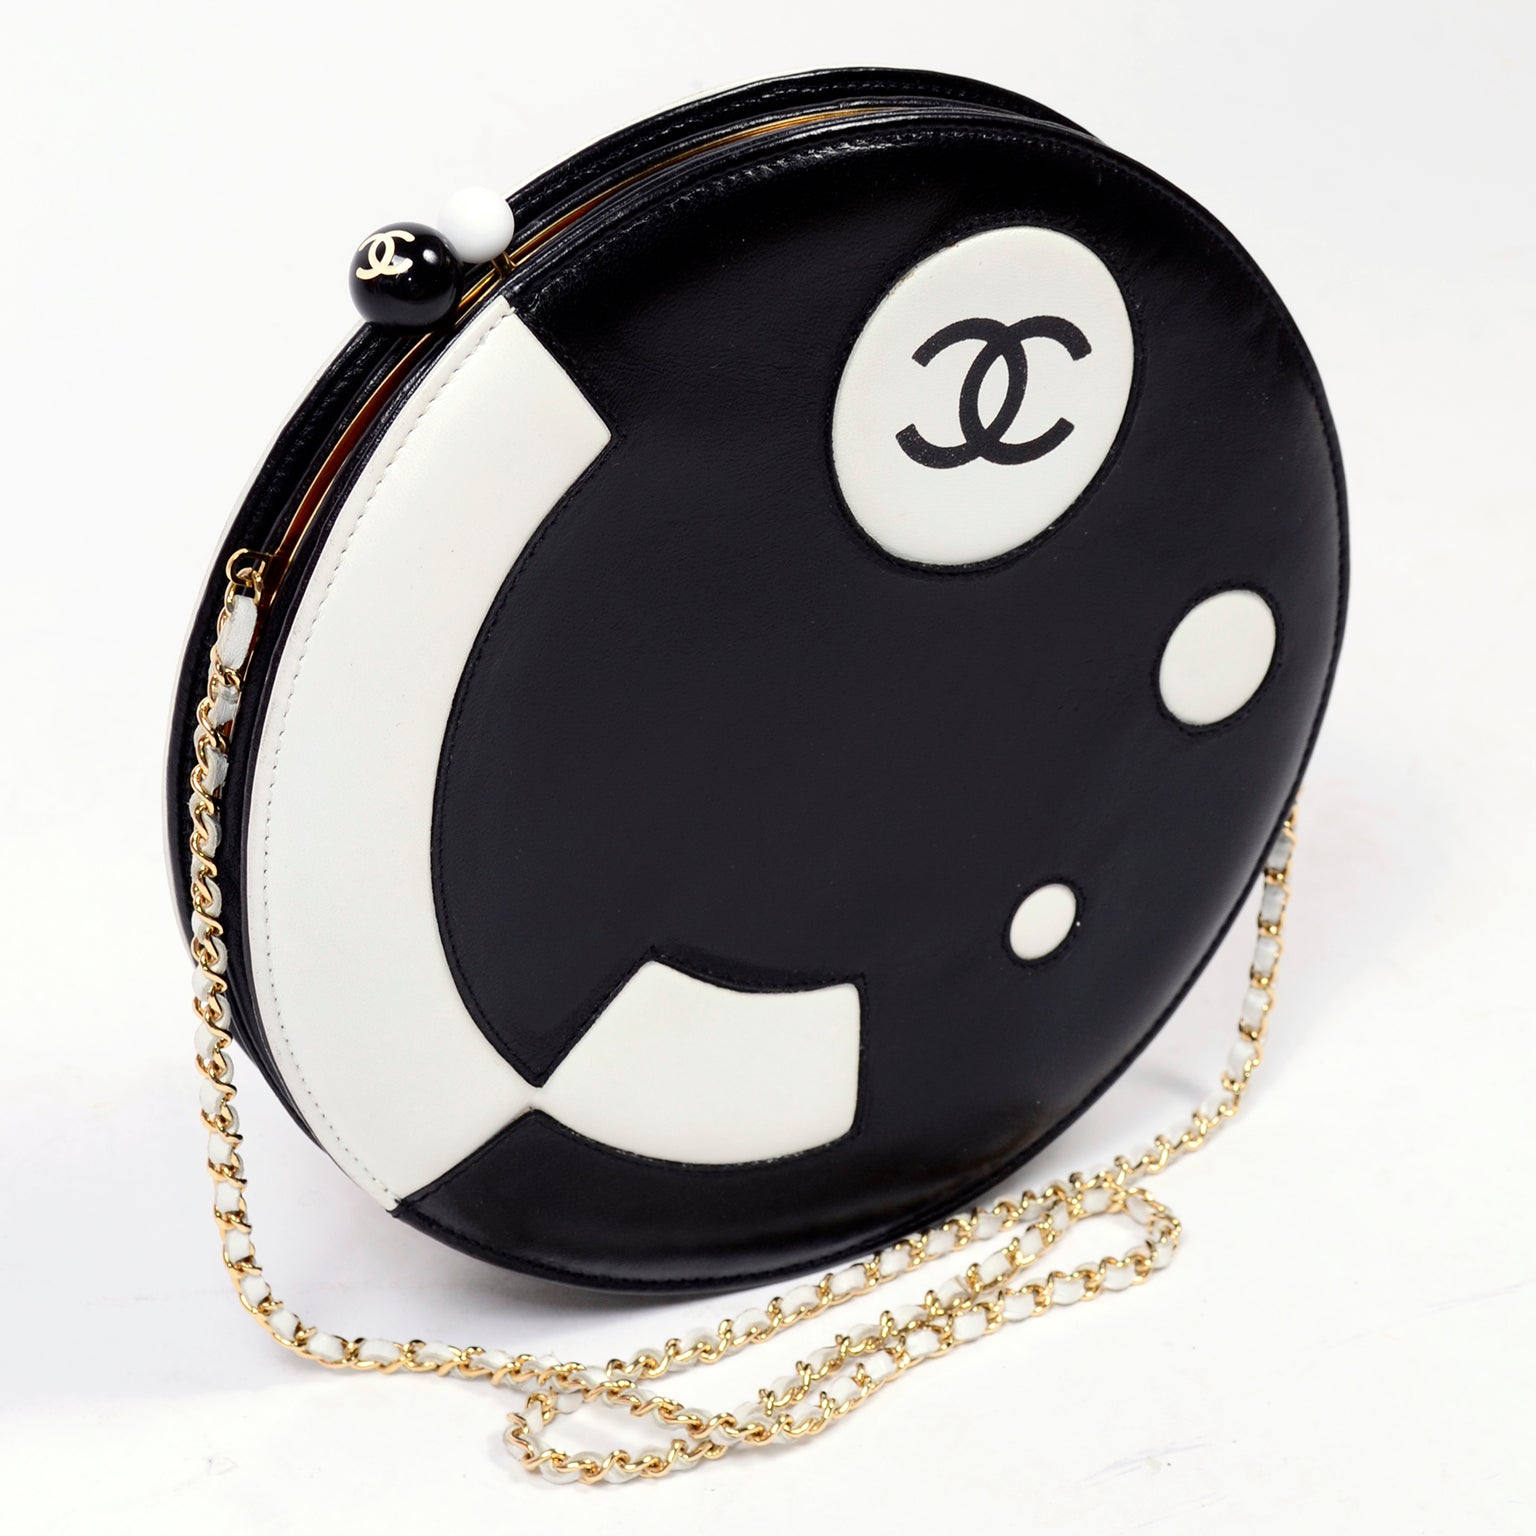 Black & White Leather Chanel Disk Handbag Circular Clutch Shoulder